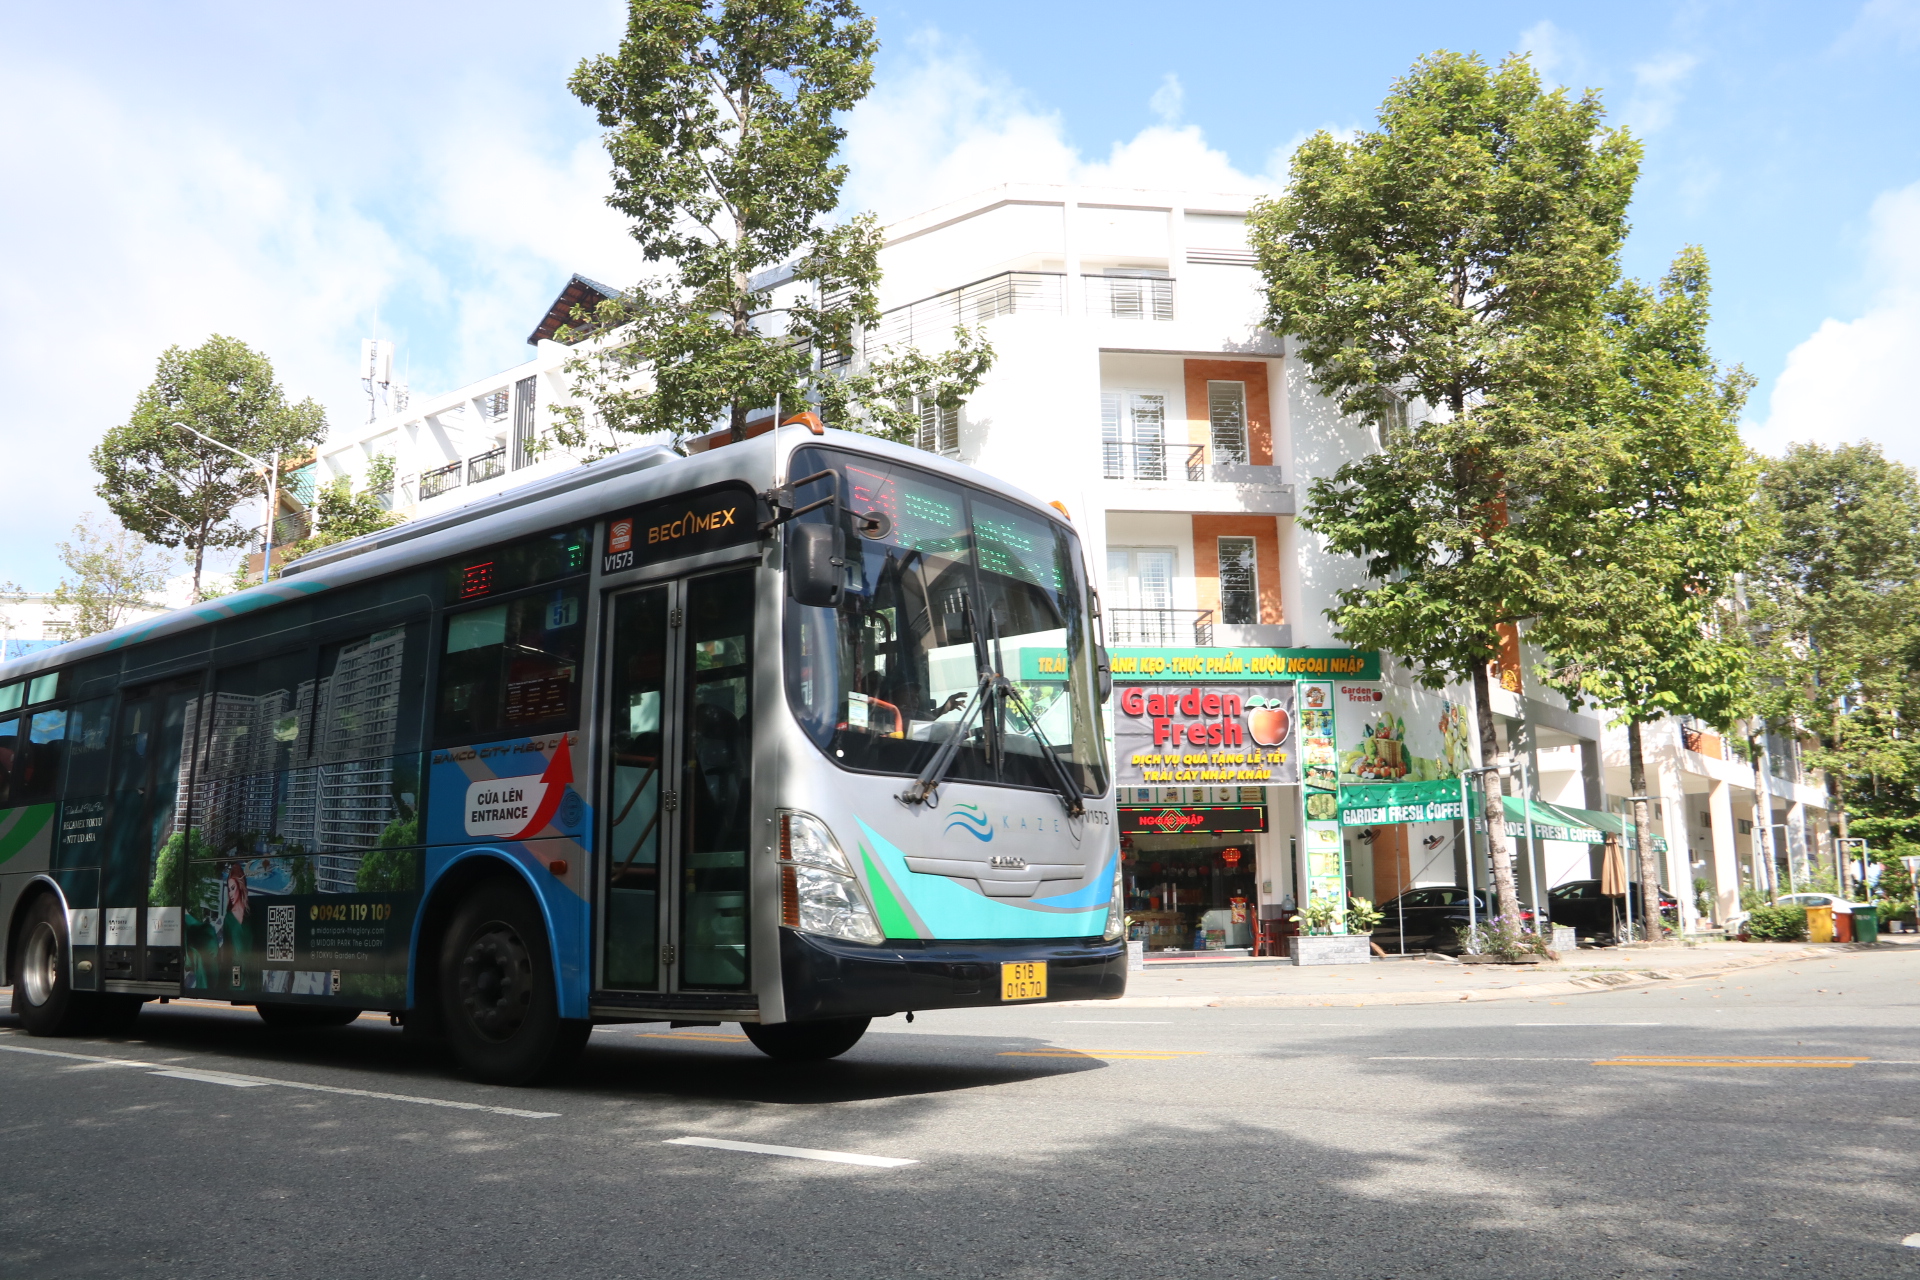 Phương tiện công cộng nổi bật của Thành phố mới Bình Dương là xe buýt xanh - chạy bằng nhiên liệu sạch ở Bình Dương, giảm thiểu tác động đến môi trường.